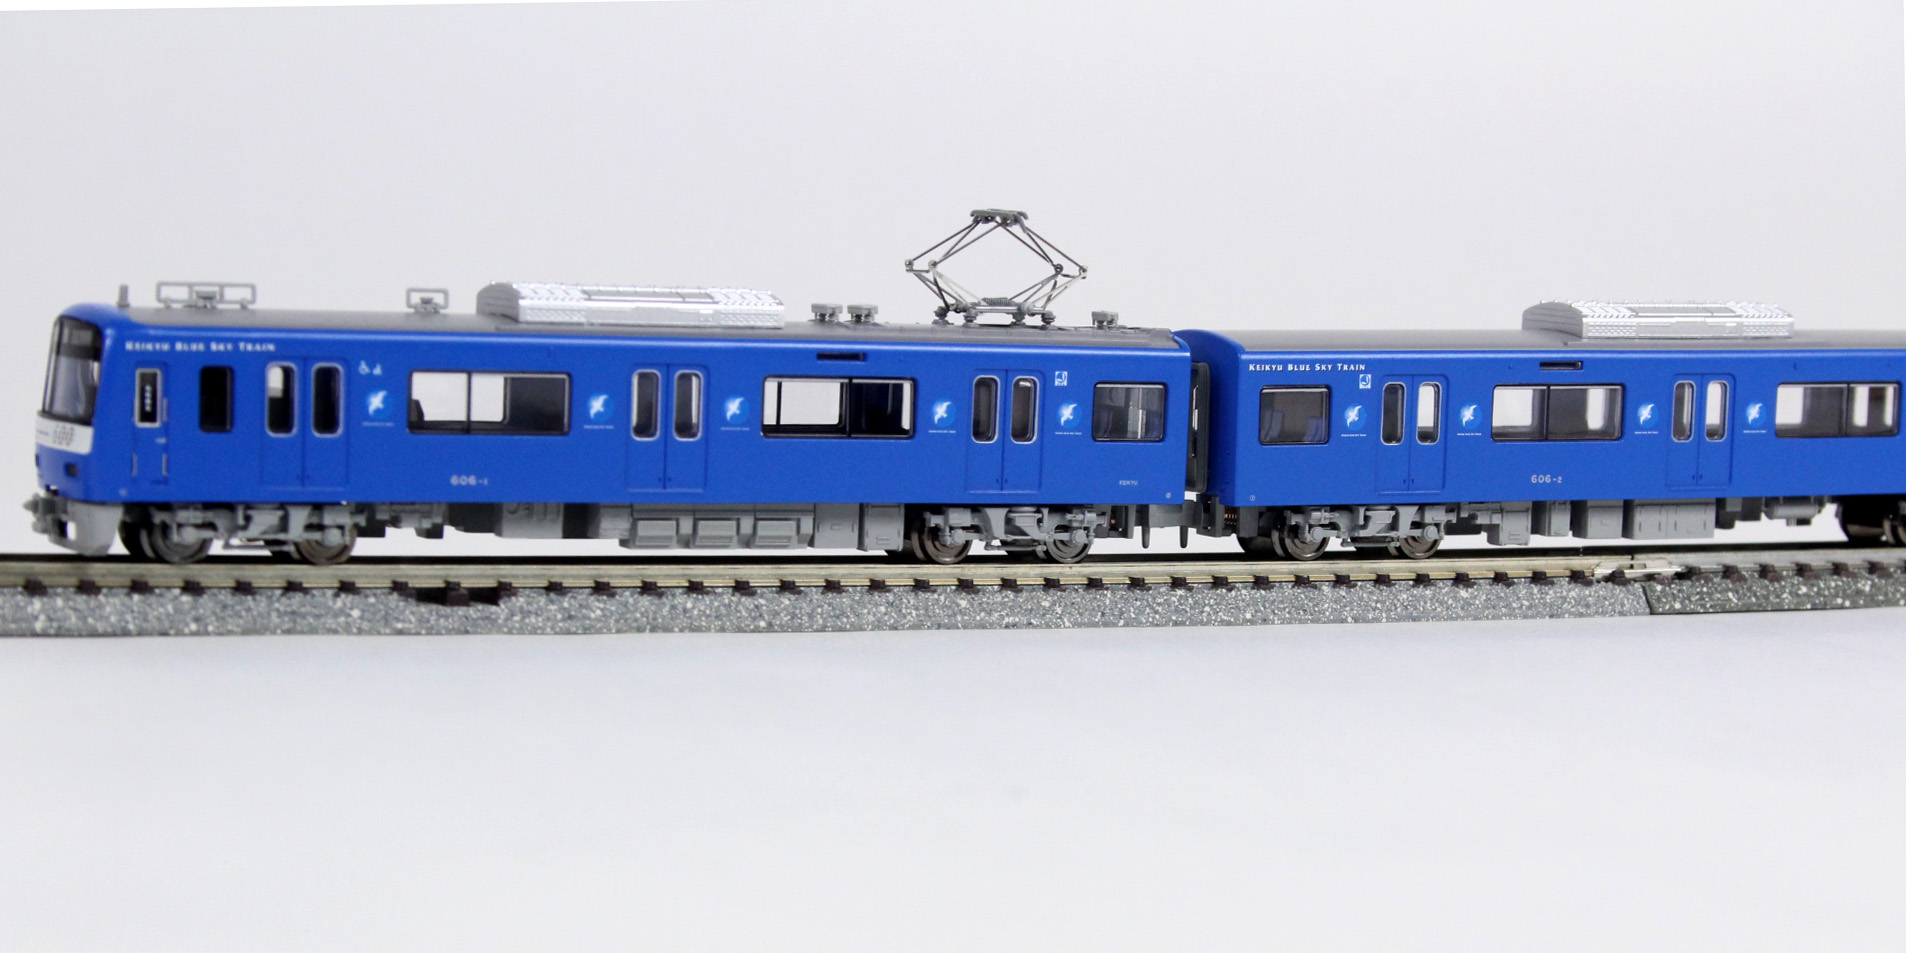 マイクロエース A7178 京急600形 KEIKYU BLUE SKY TRAIN SRアンテナ付